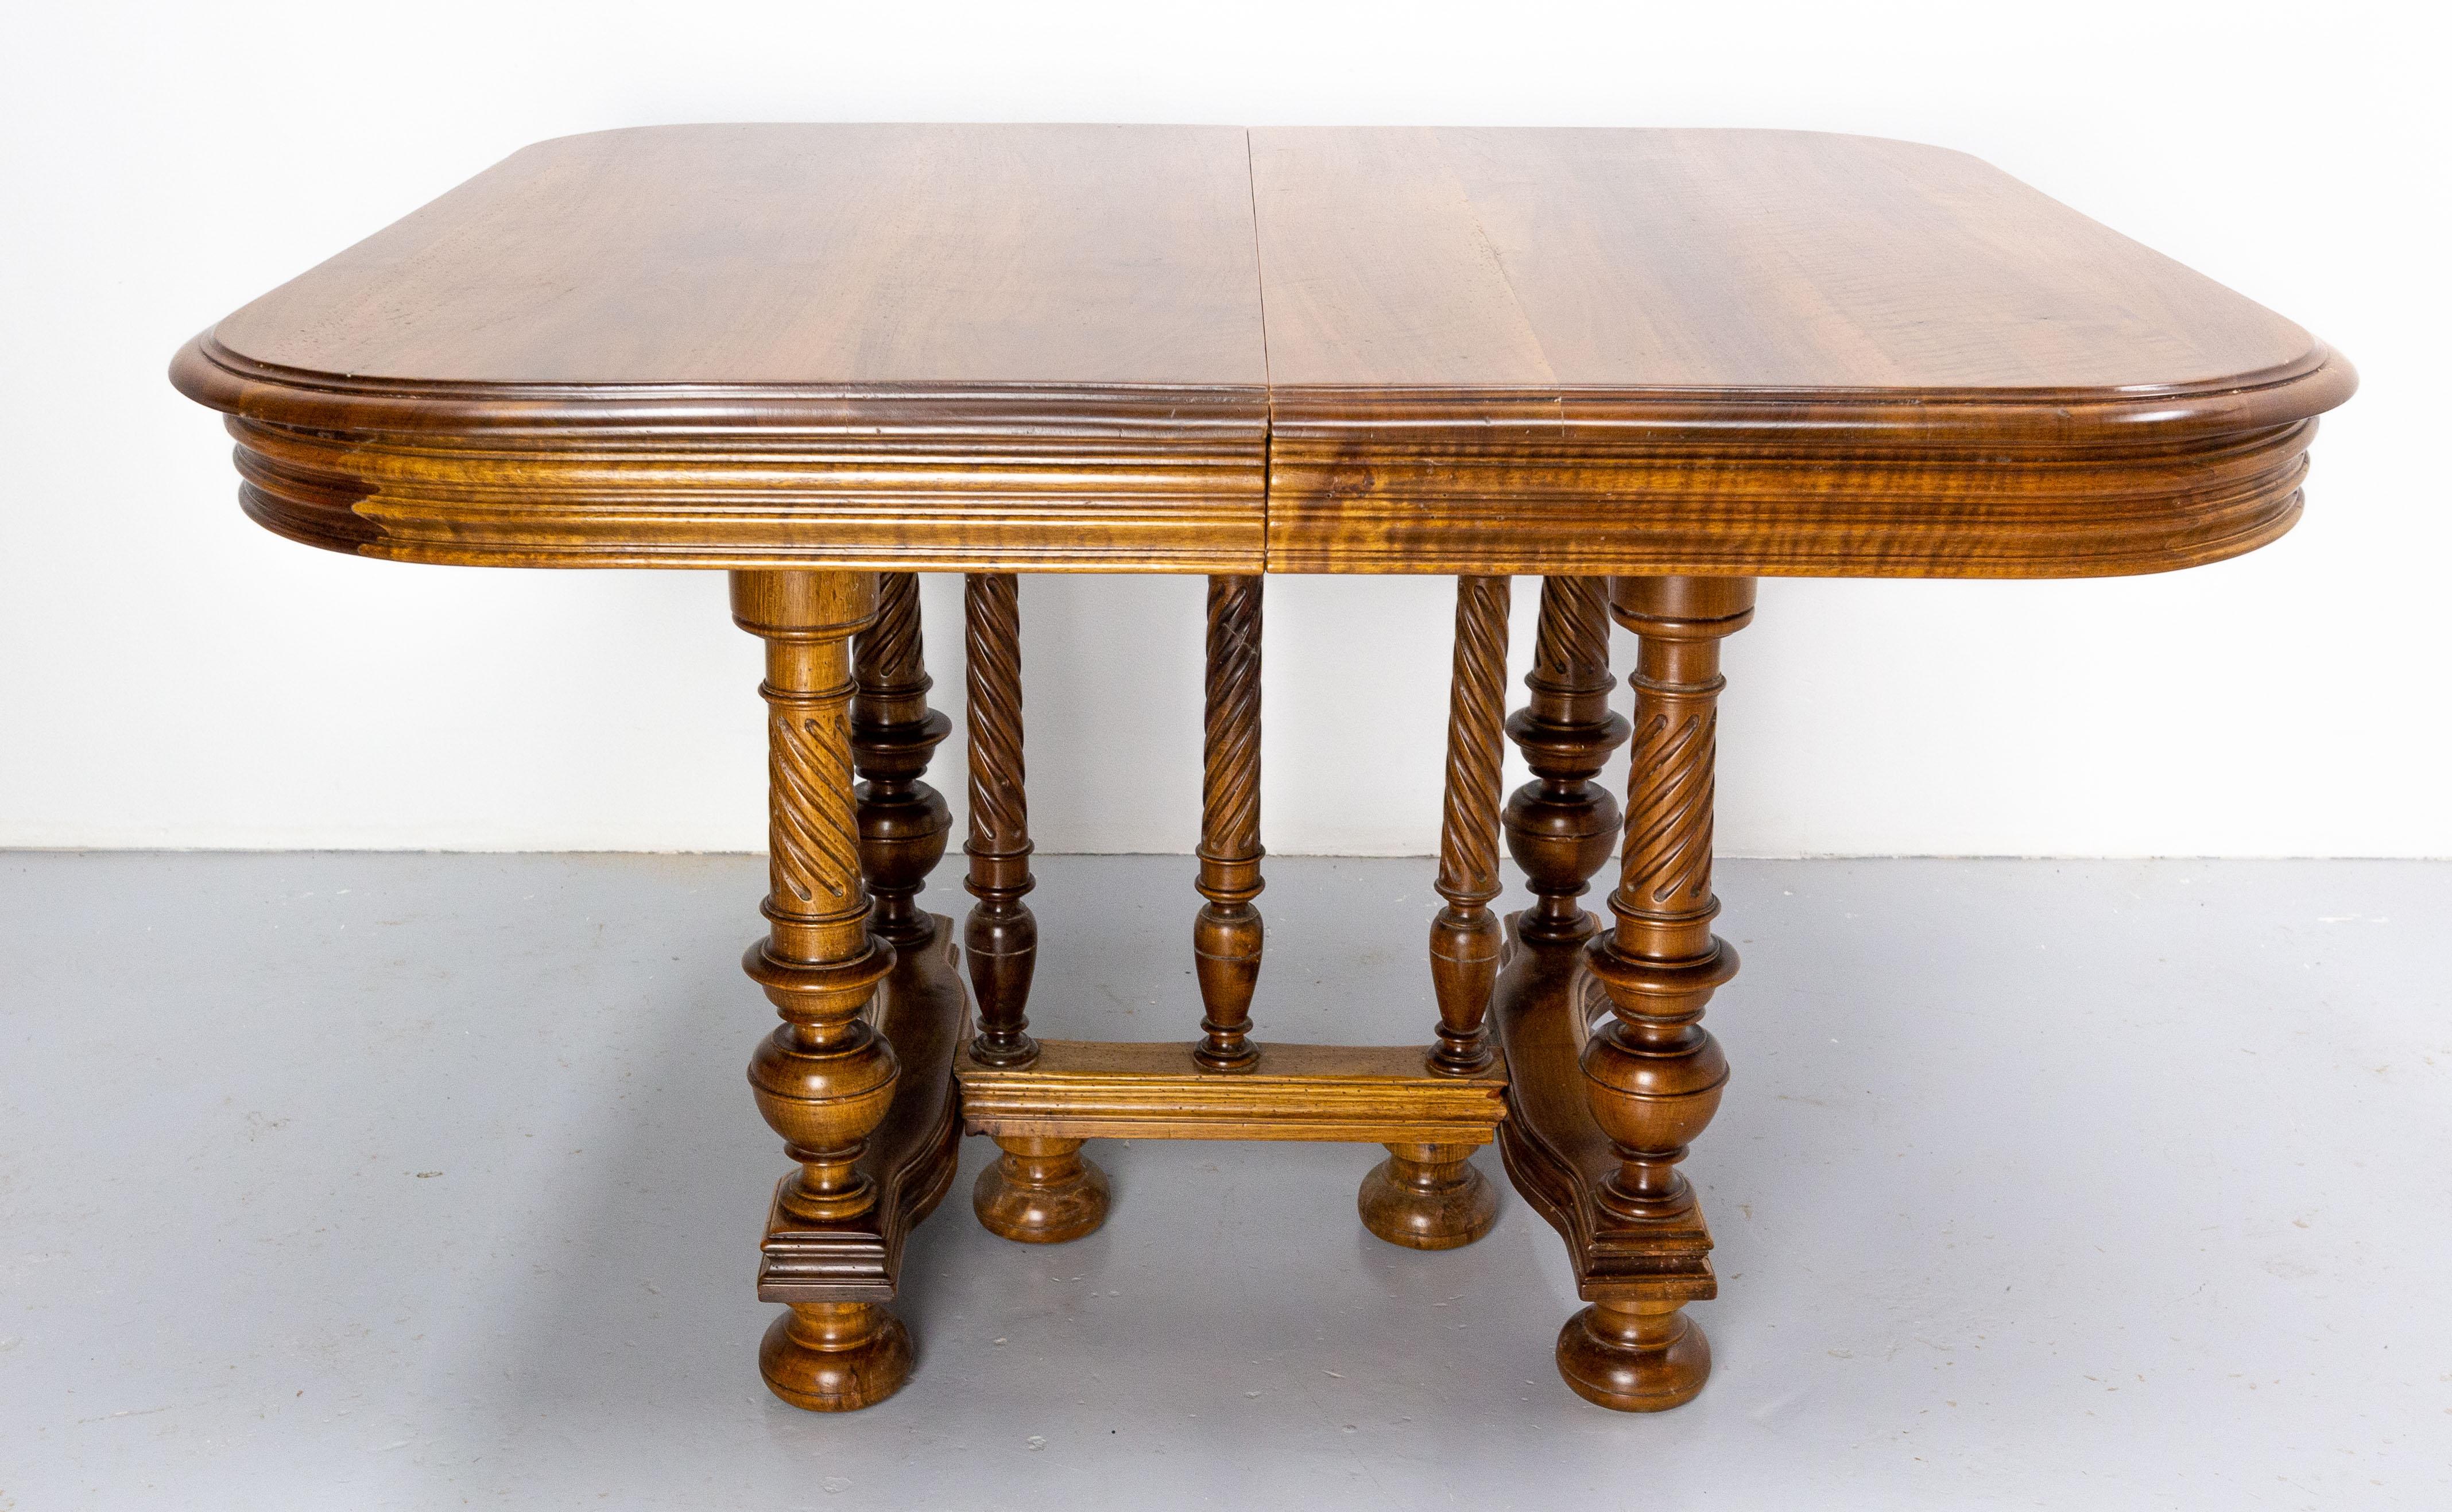 Cette table à manger en noyer de style Louis XIII a été fabriquée en France.
Sans les extensions, cette table mesure 113 cm (44,49 po) de long. 
Les sept pieds tordus sont typiques du style Louis XIII.
Les extensions de la table sont les